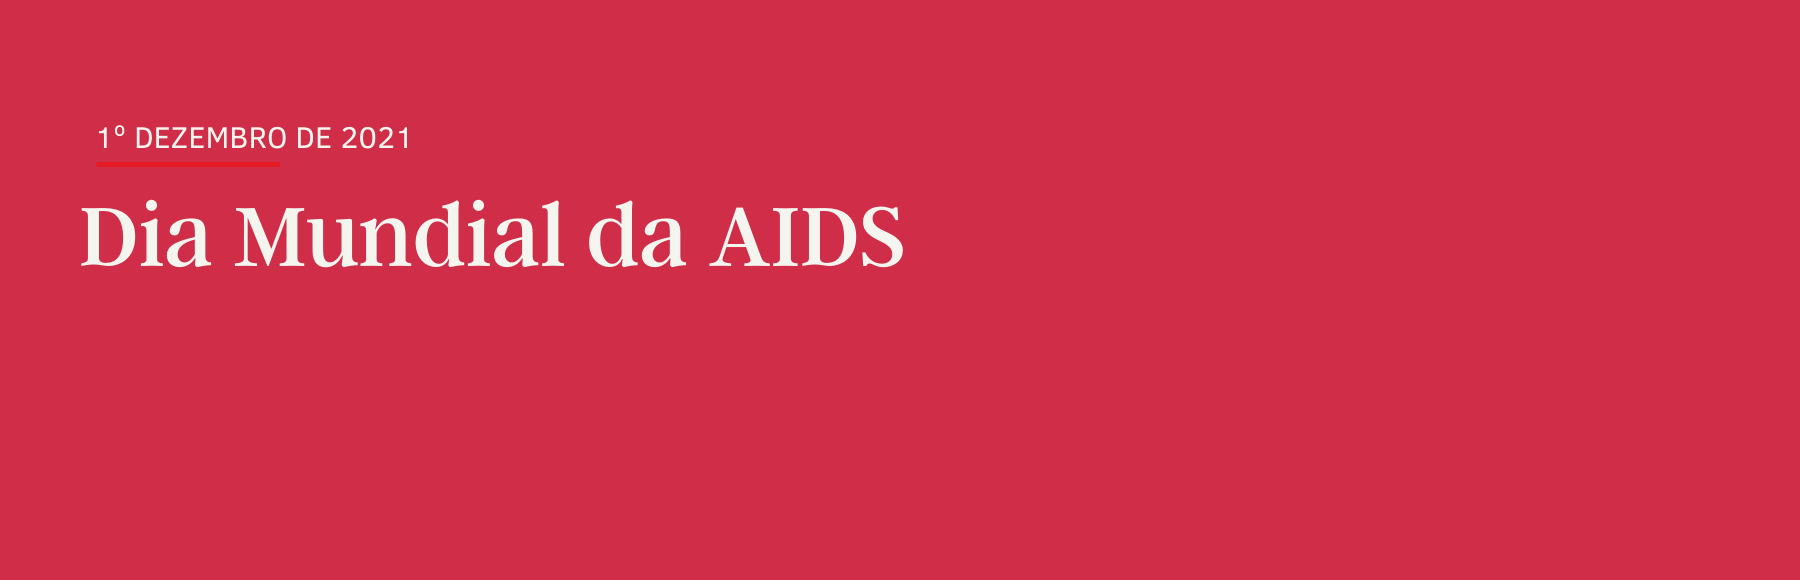 Acabar com as desigualdades. Acabar com a AIDS. Acabar com as pandemias. -  UNAIDS Brasil